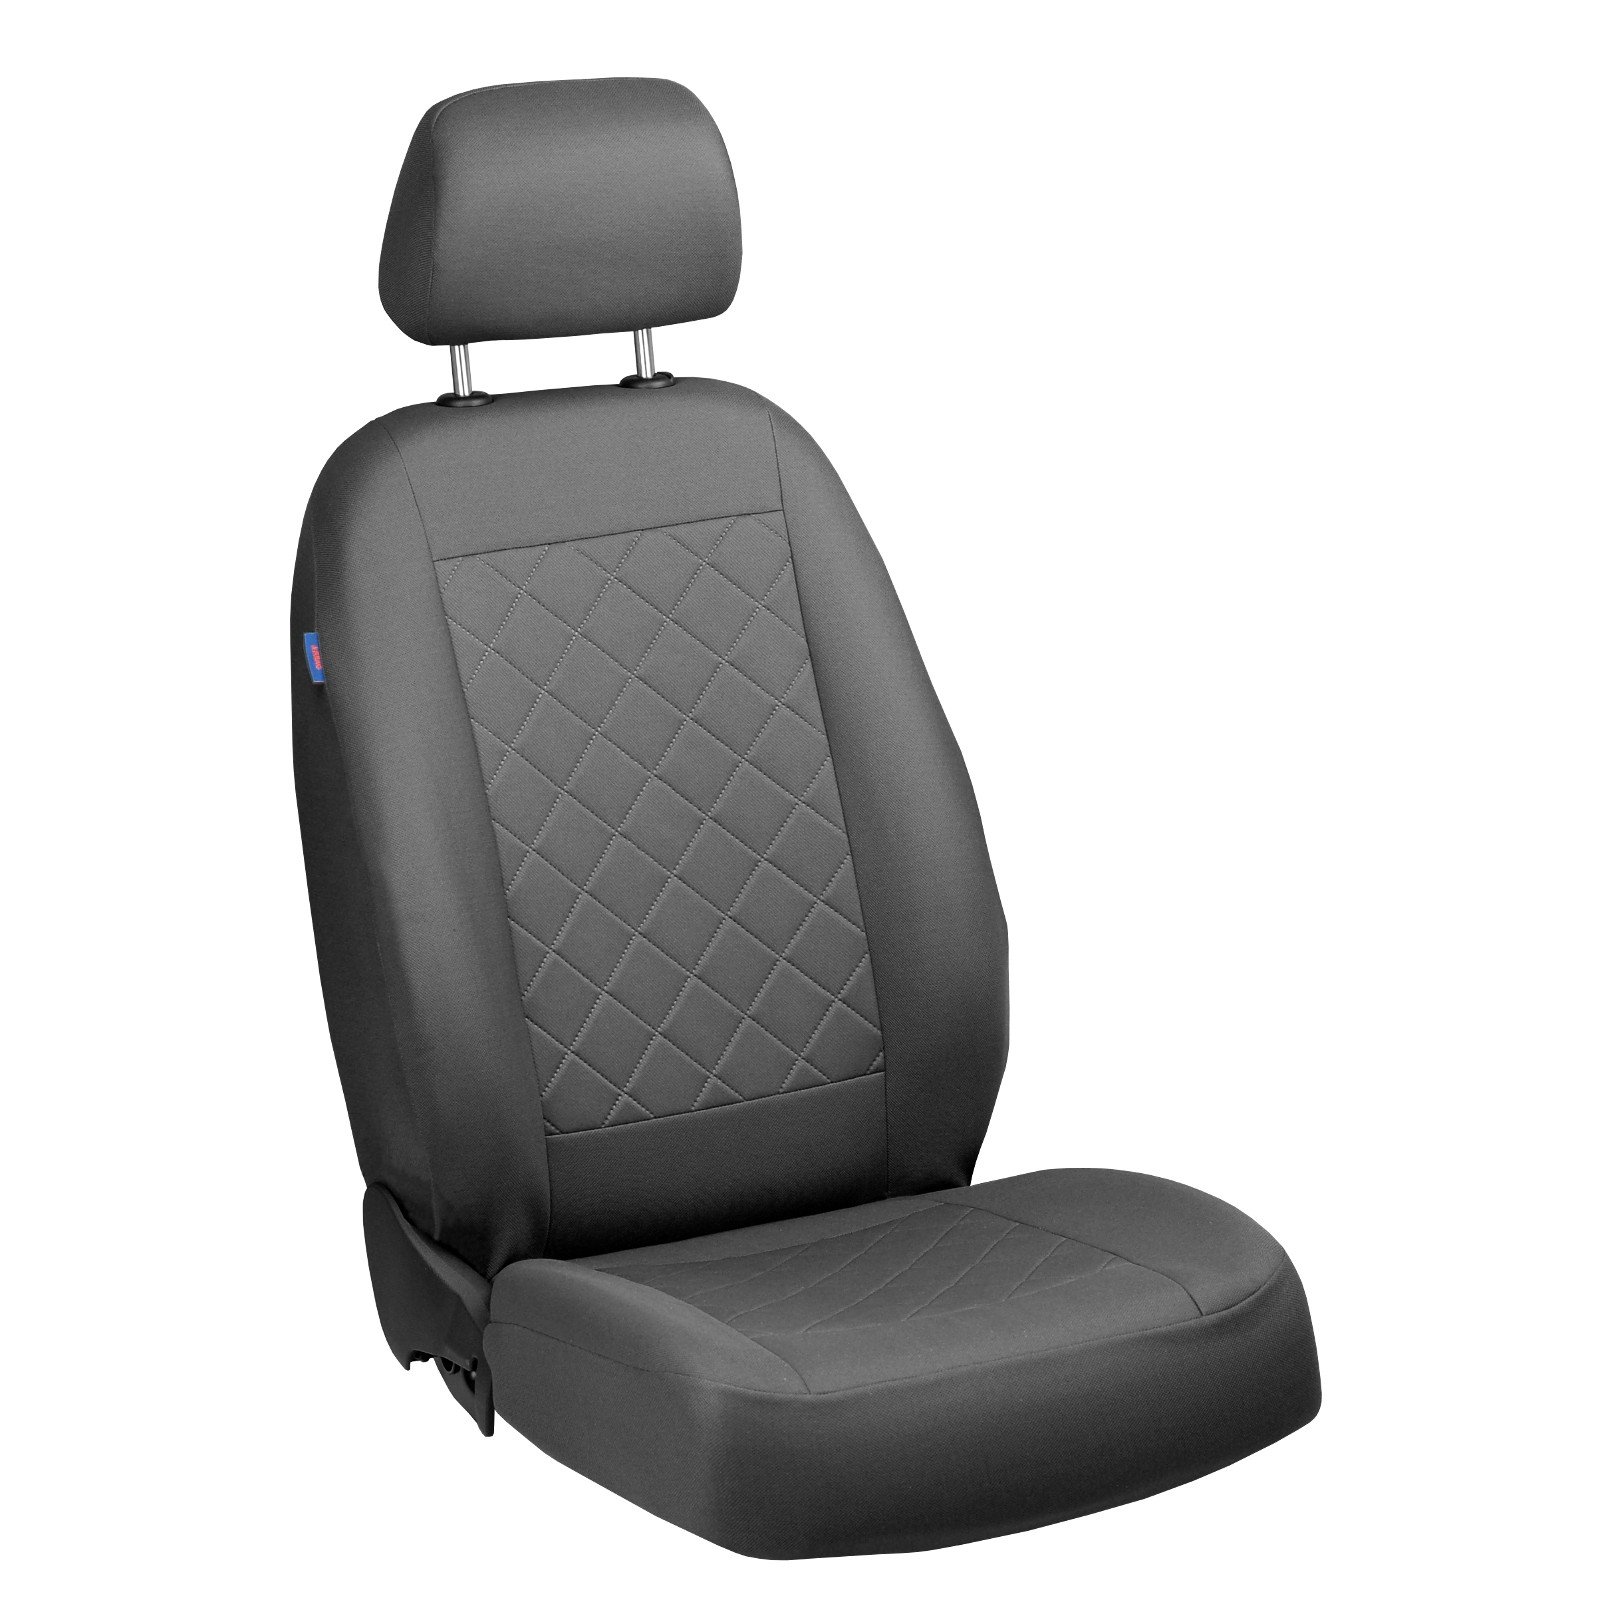 Zakschneider Vario Fahrer Sitzbezug - Farbe Premium Grau von Zakschneider